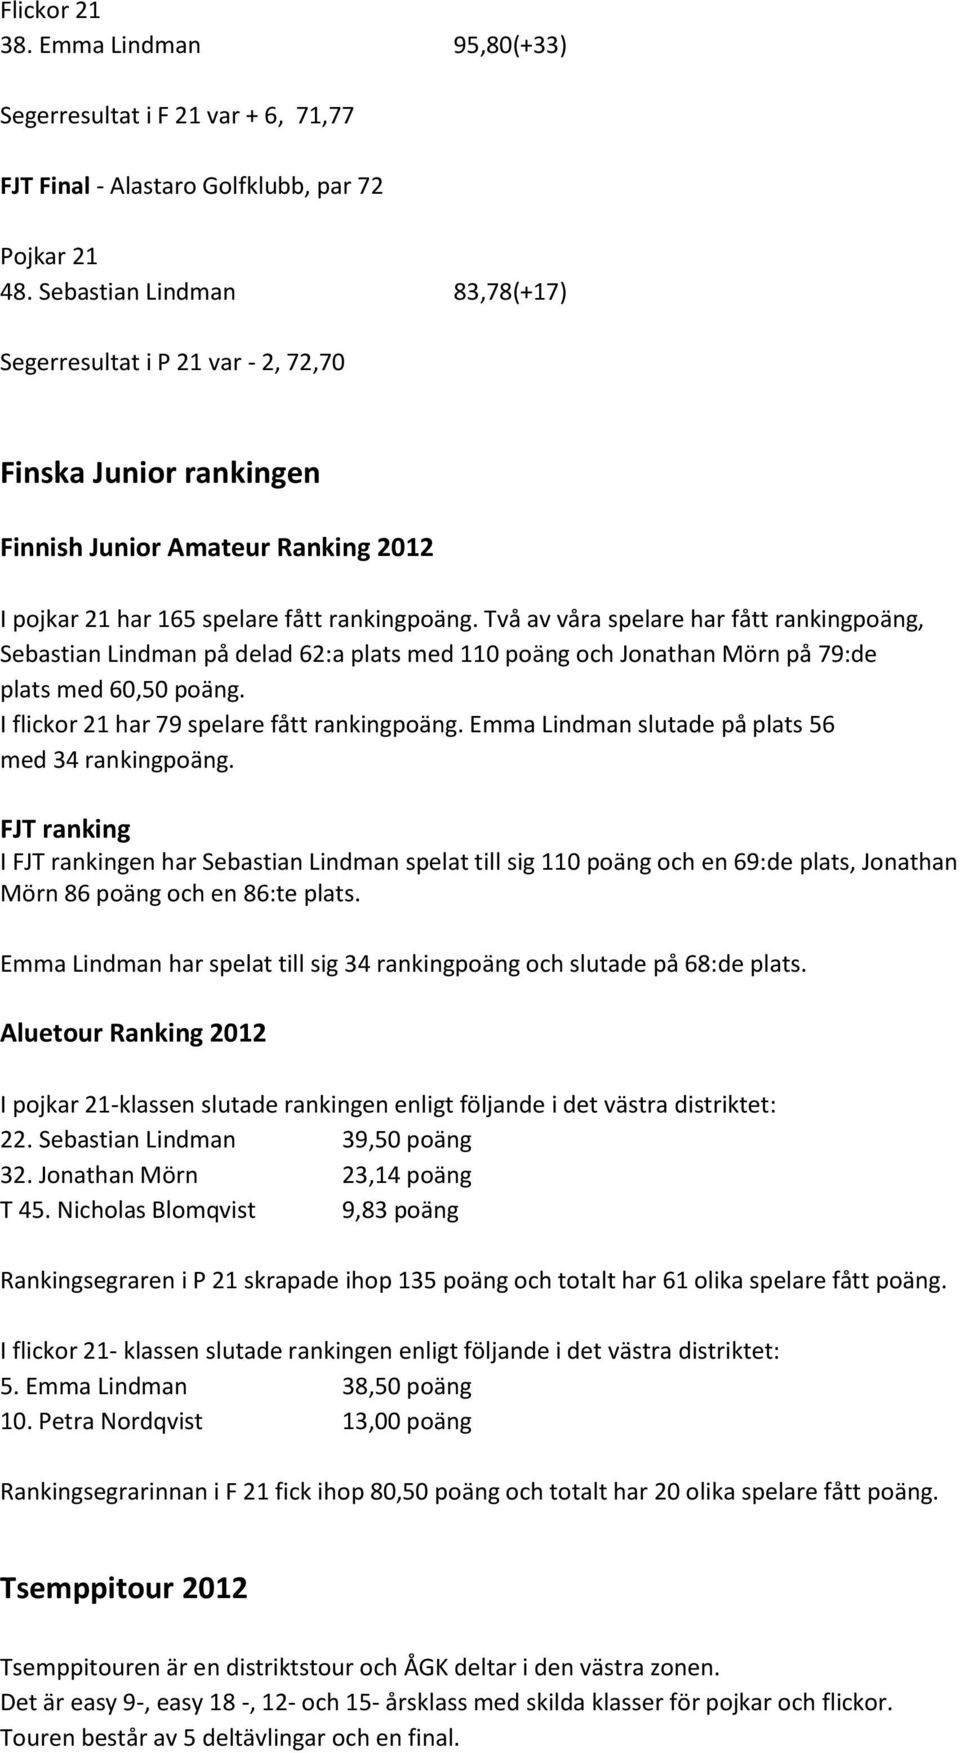 Två av våra spelare har fått rankingpoäng, Sebastian Lindman på delad 62:a plats med 110 poäng och Jonathan Mörn på 79:de plats med 60,50 poäng. I flickor 21 har 79 spelare fått rankingpoäng.